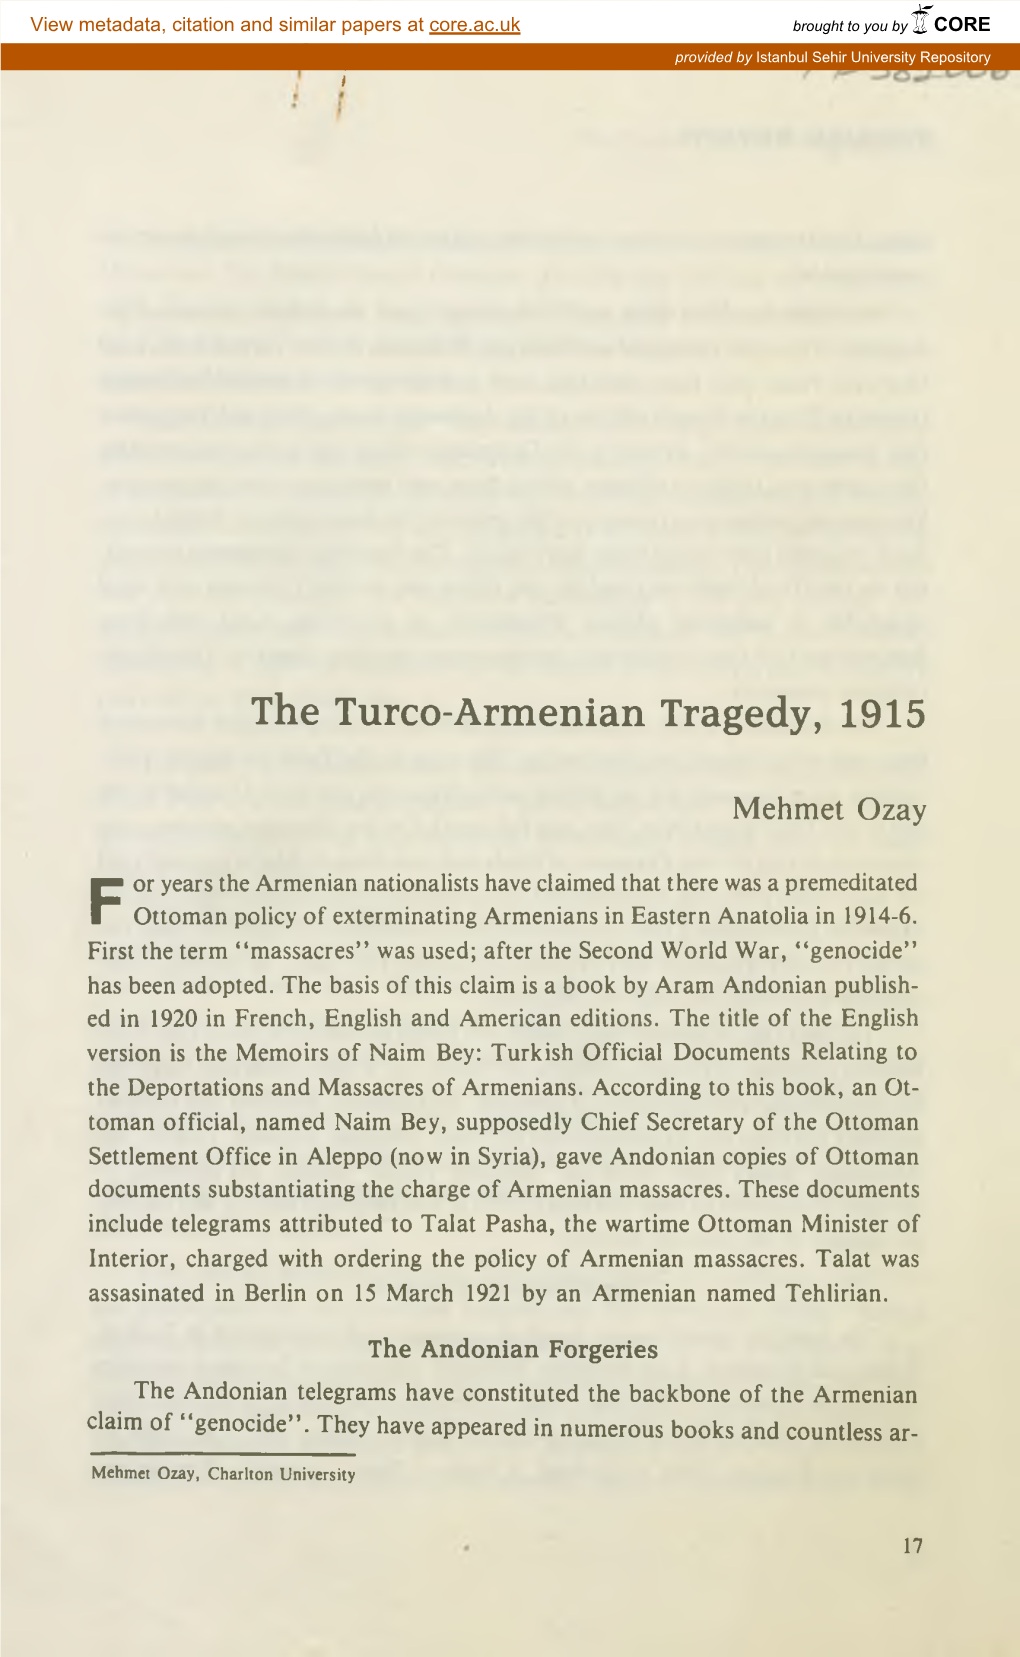 The Turco-Armenian Tragedy, 1915